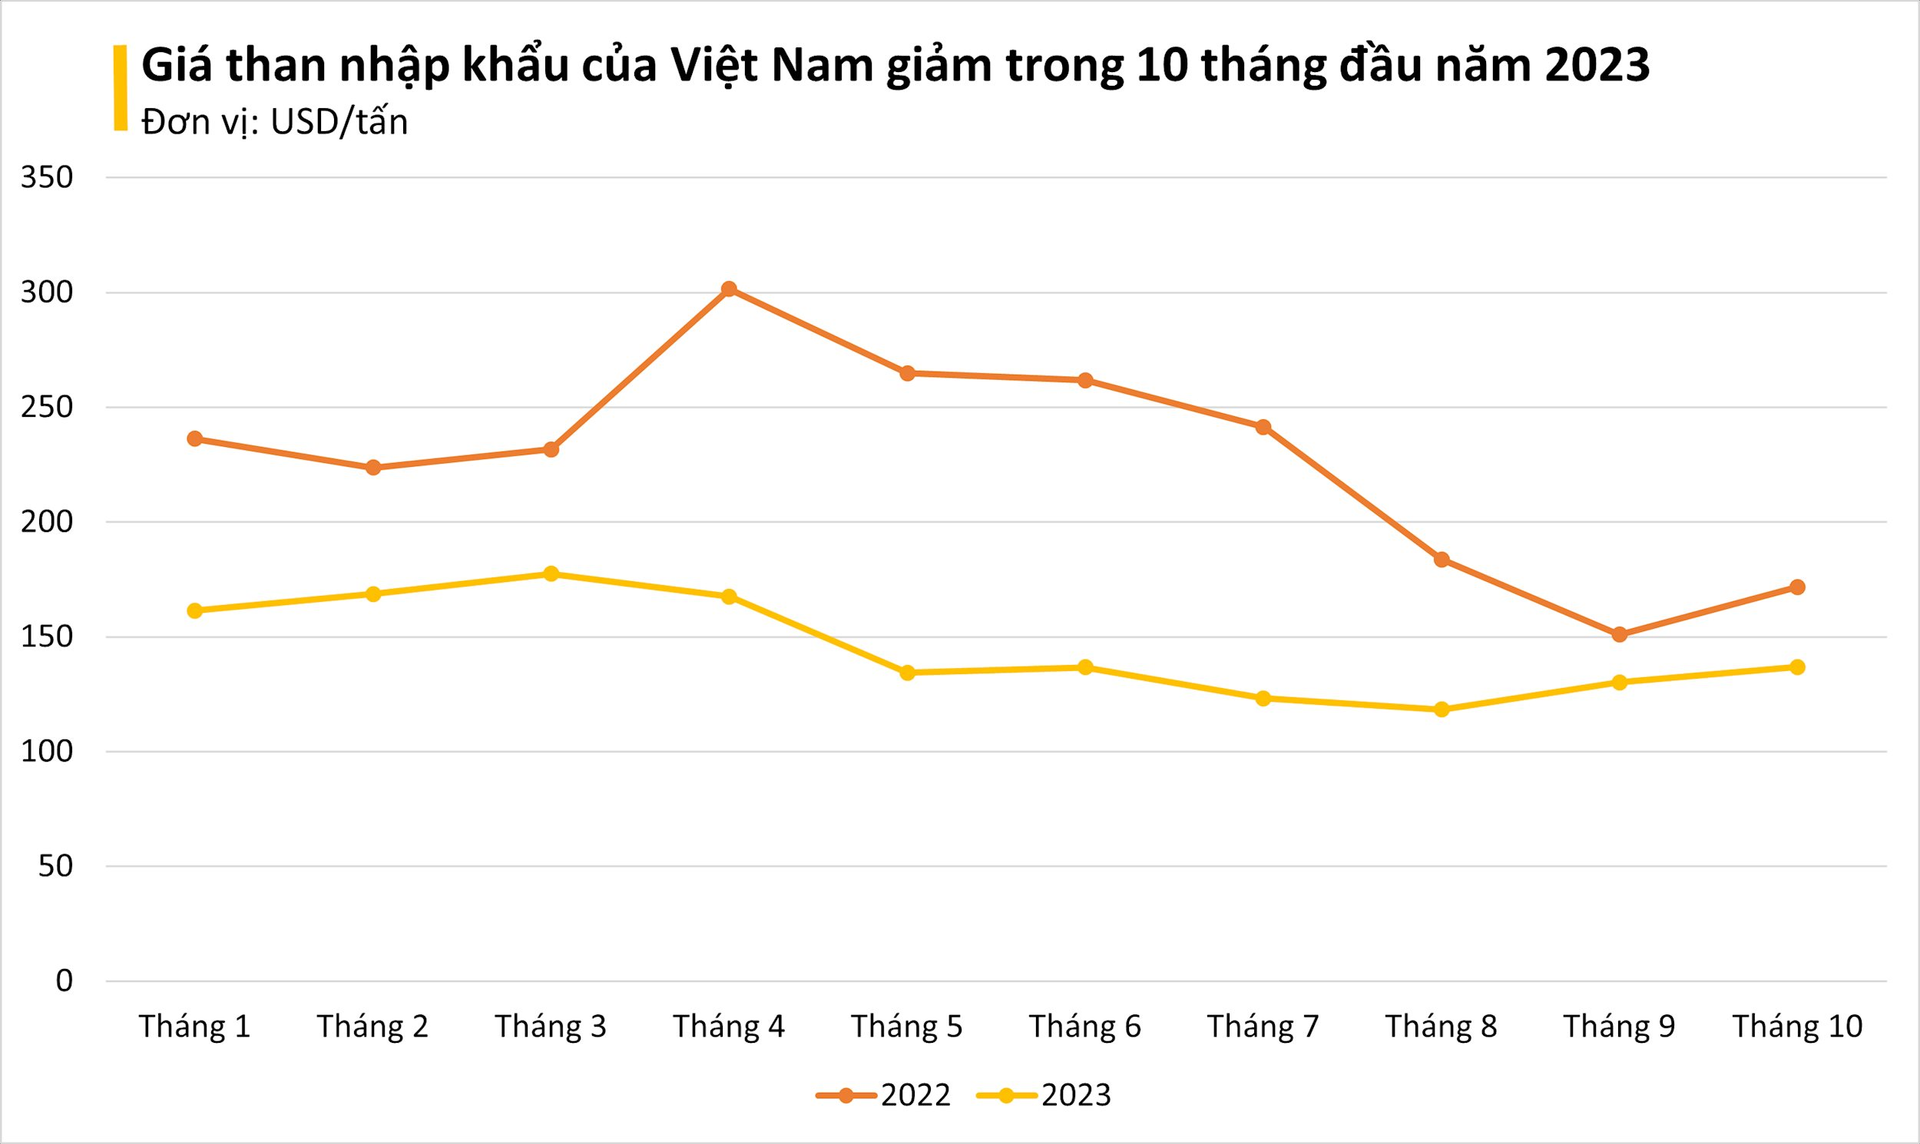 Giá rẻ kỷ lục, một mặt hàng từ Indonesia đang ồ ạt tràn vào Việt Nam: nhập khẩu tăng mạnh 3 chữ số, ảnh hưởng lớn đến giá điện - Ảnh 1.